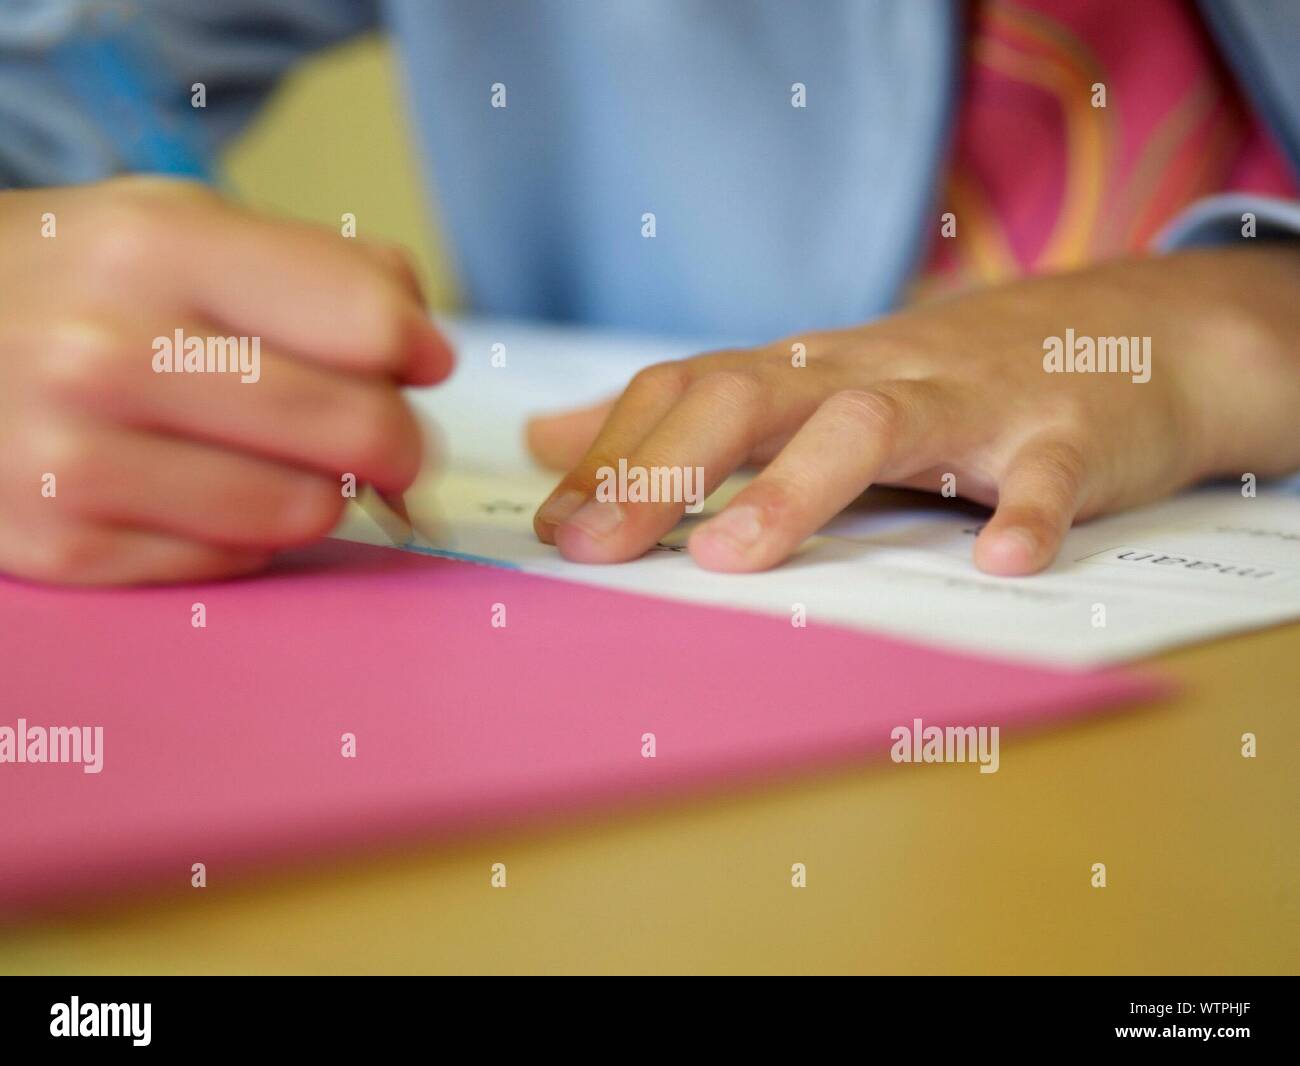 Le mani della persona scrivendo al banco Foto Stock